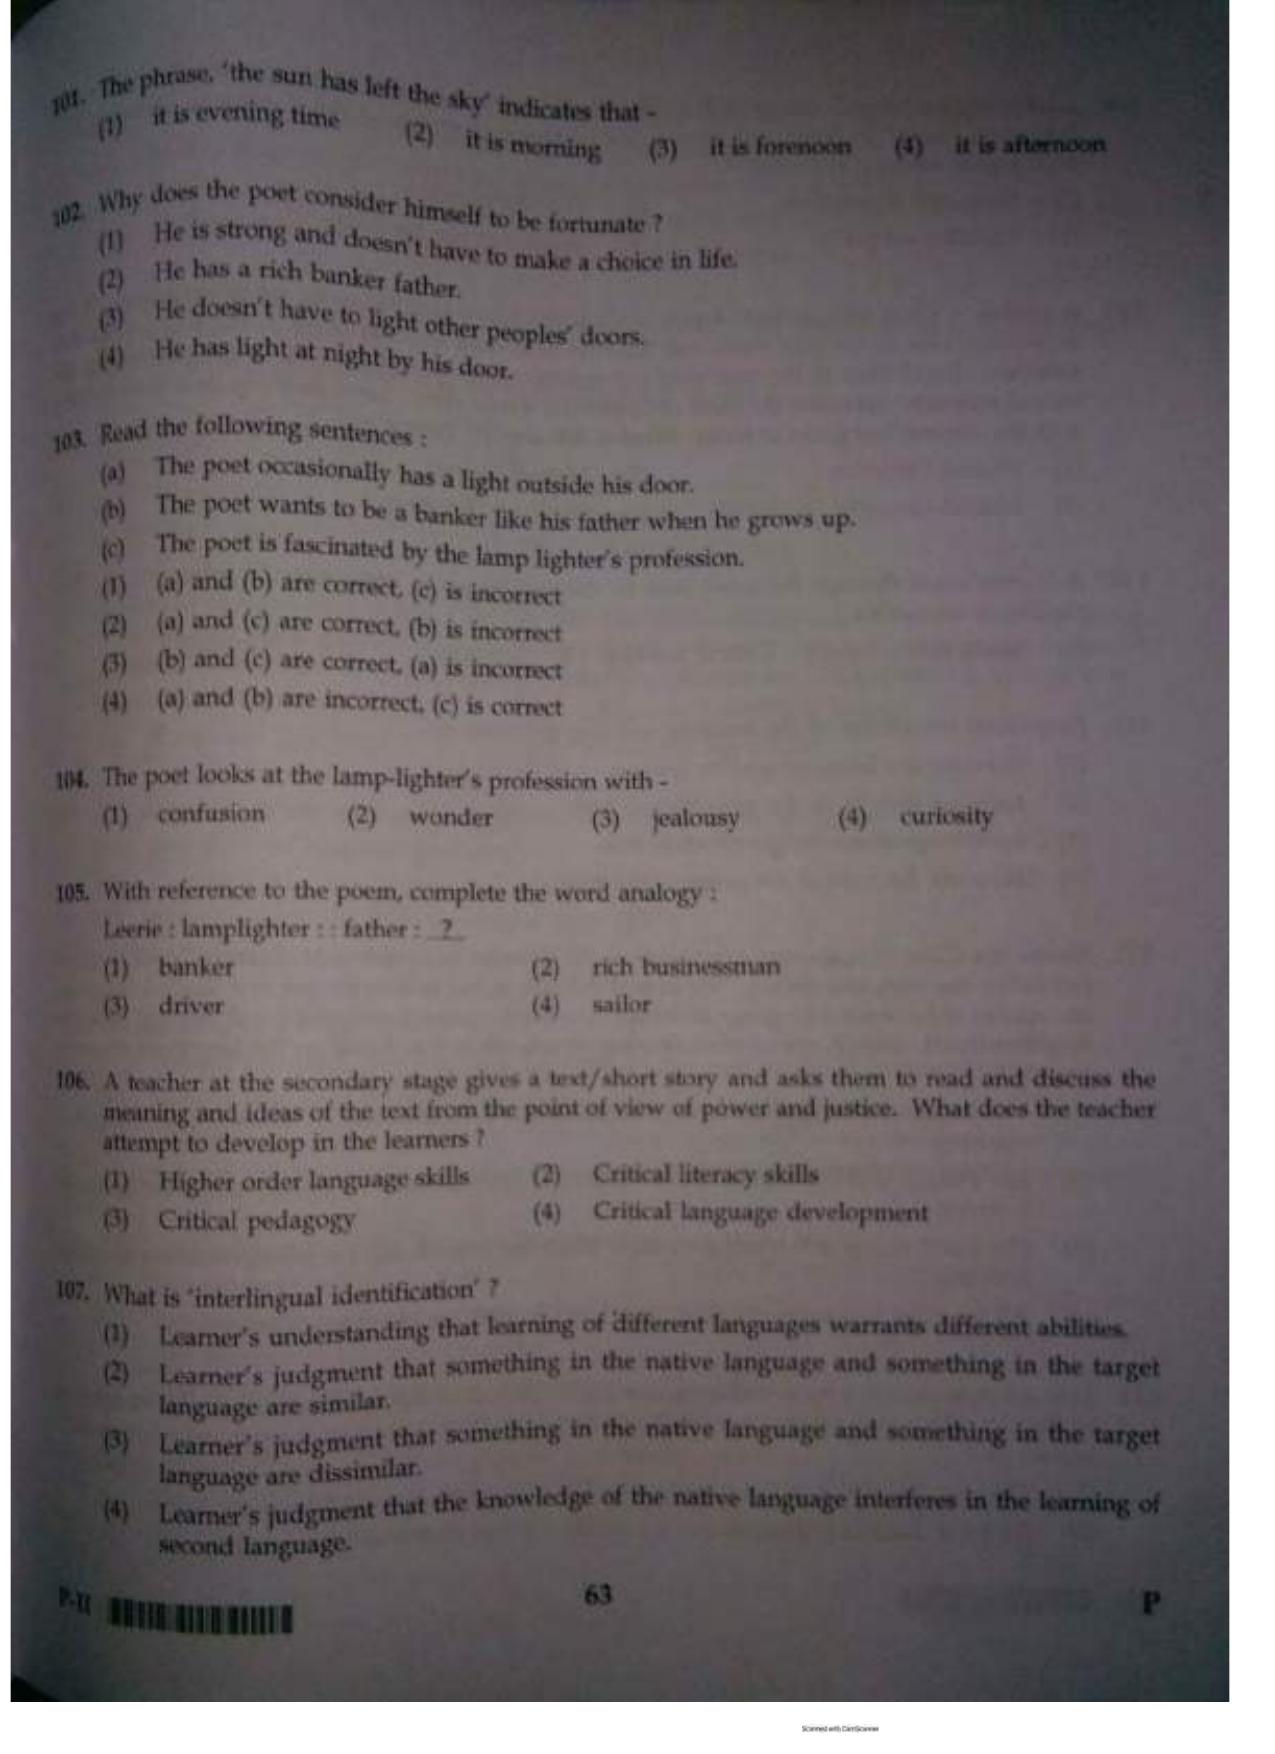 ctet paper 2 question paper SET P - Page 62